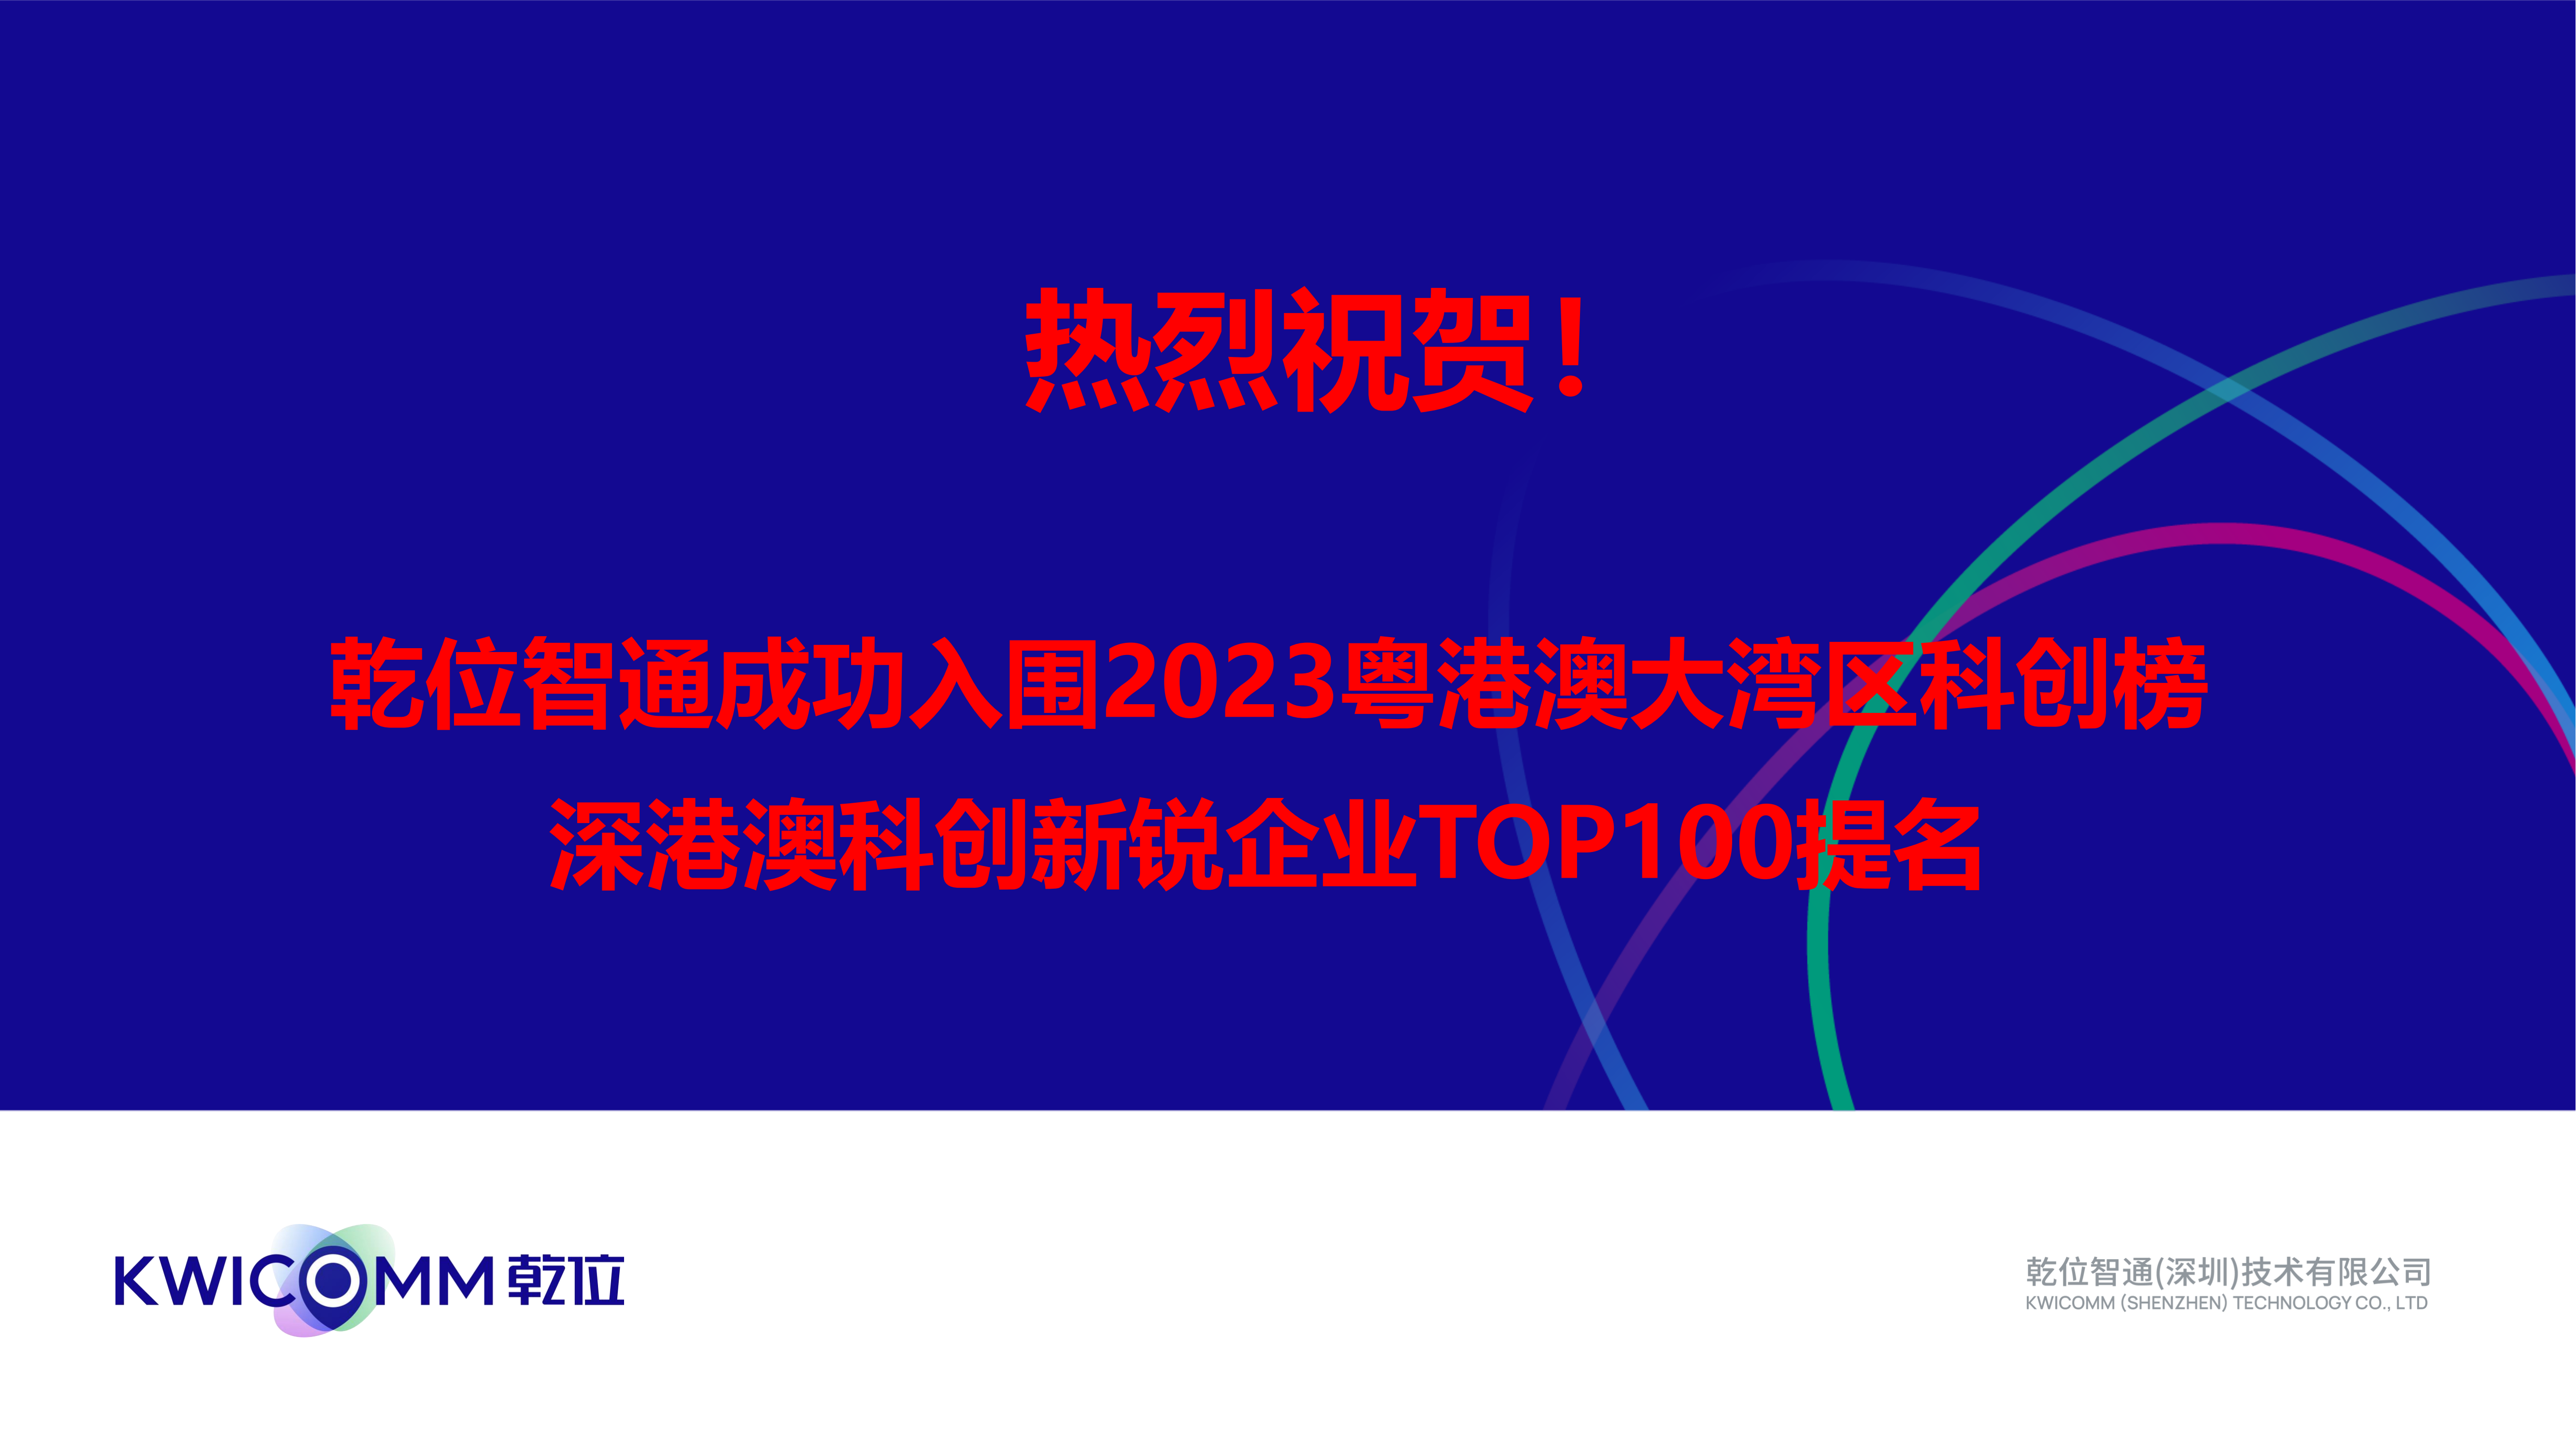 热烈祝贺！ISLOT中国智通成功入围2023粤港澳大湾区科创榜—深港澳科创新锐企业TOP100提名